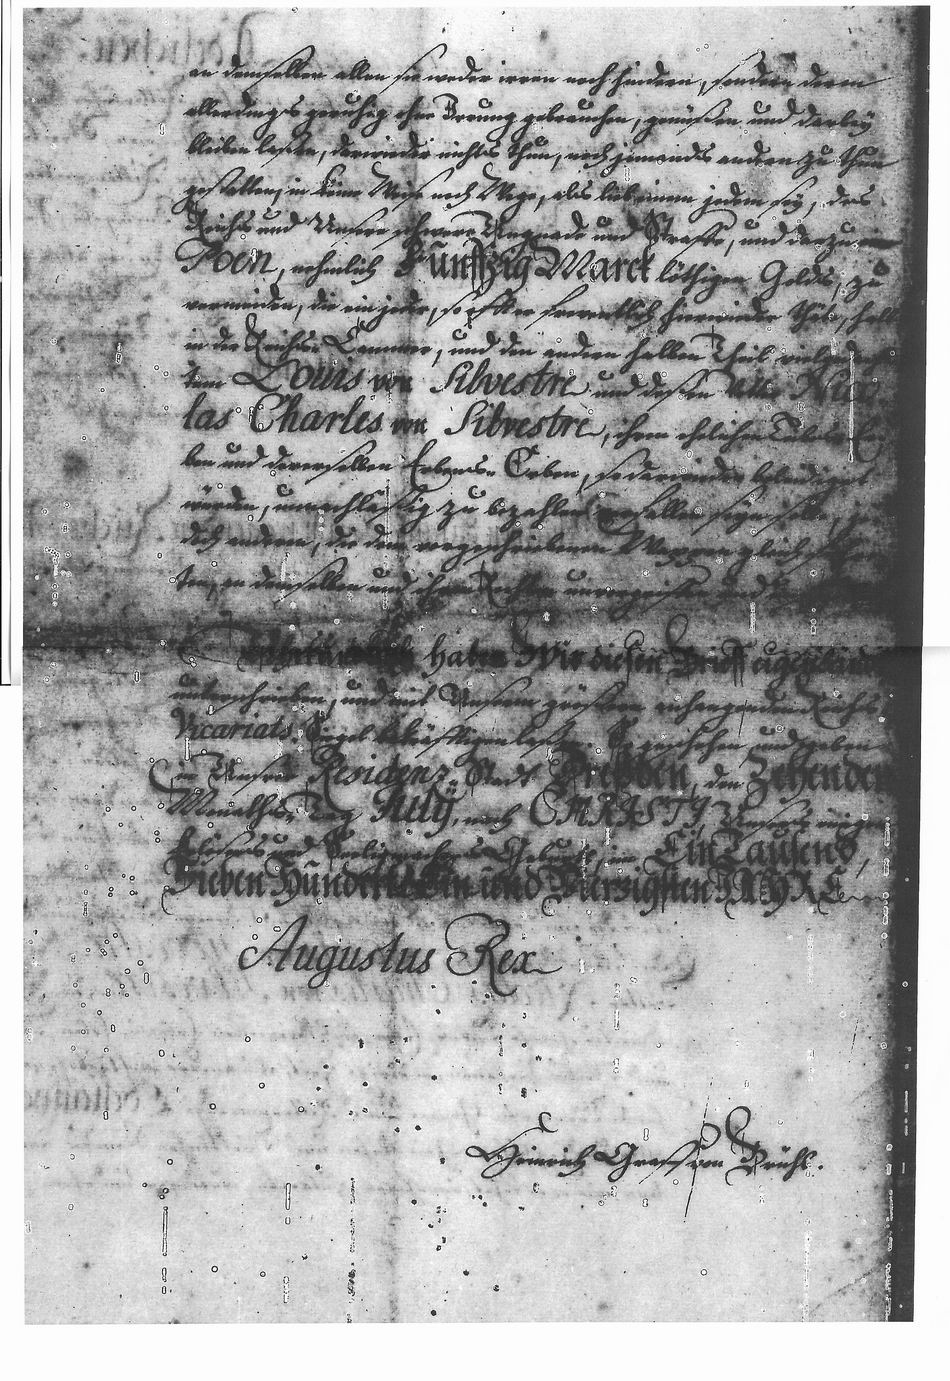 Lettres de noblesse pour Louis de Silvestre et Nicolas-Charles de Silvestre - Page 6/6